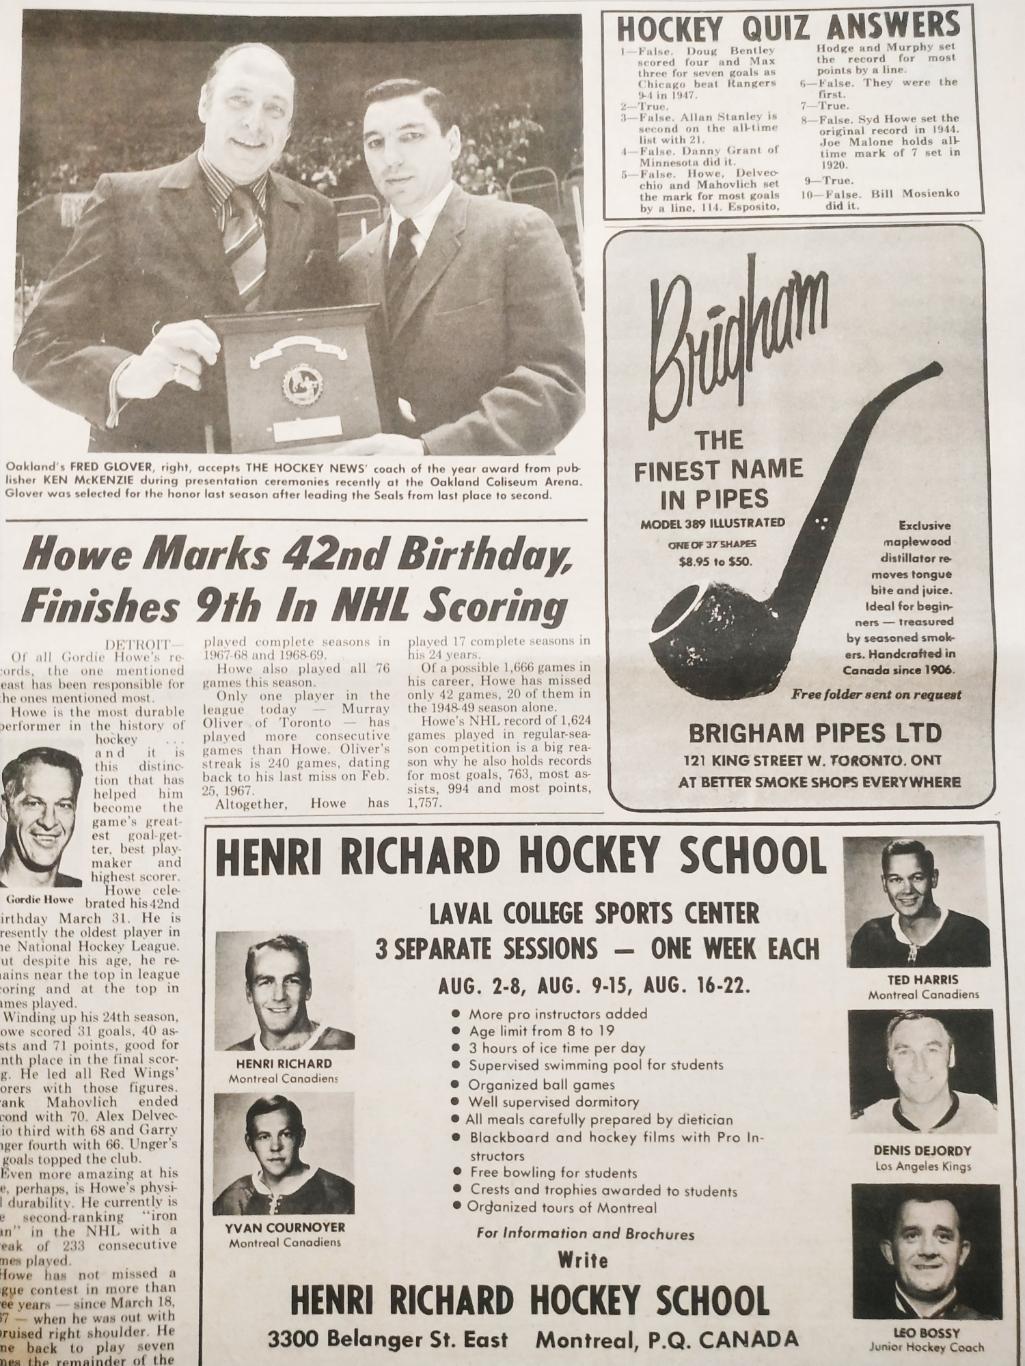 ХОККЕЙ ЖУРНАЛ ЕЖЕНЕДЕЛЬНИК НХЛ НОВОСТИ ХОККЕЯ APR.17 1970 NHL THE HOCKEY NEWS 3